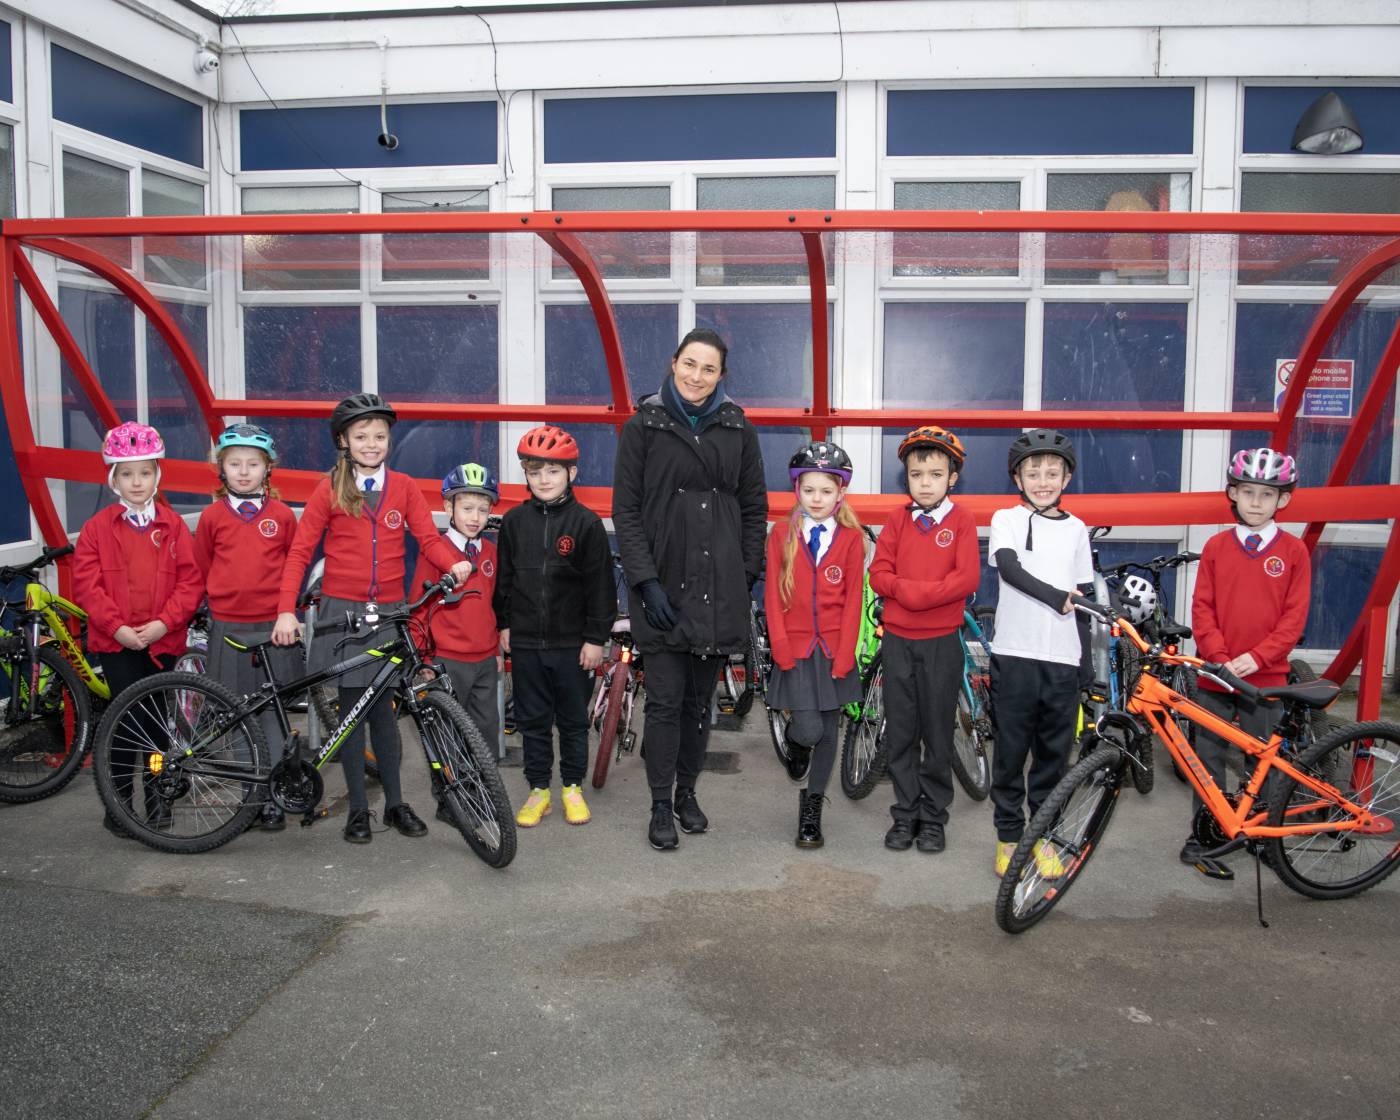 Dame Sarah Storey launching cycle hub